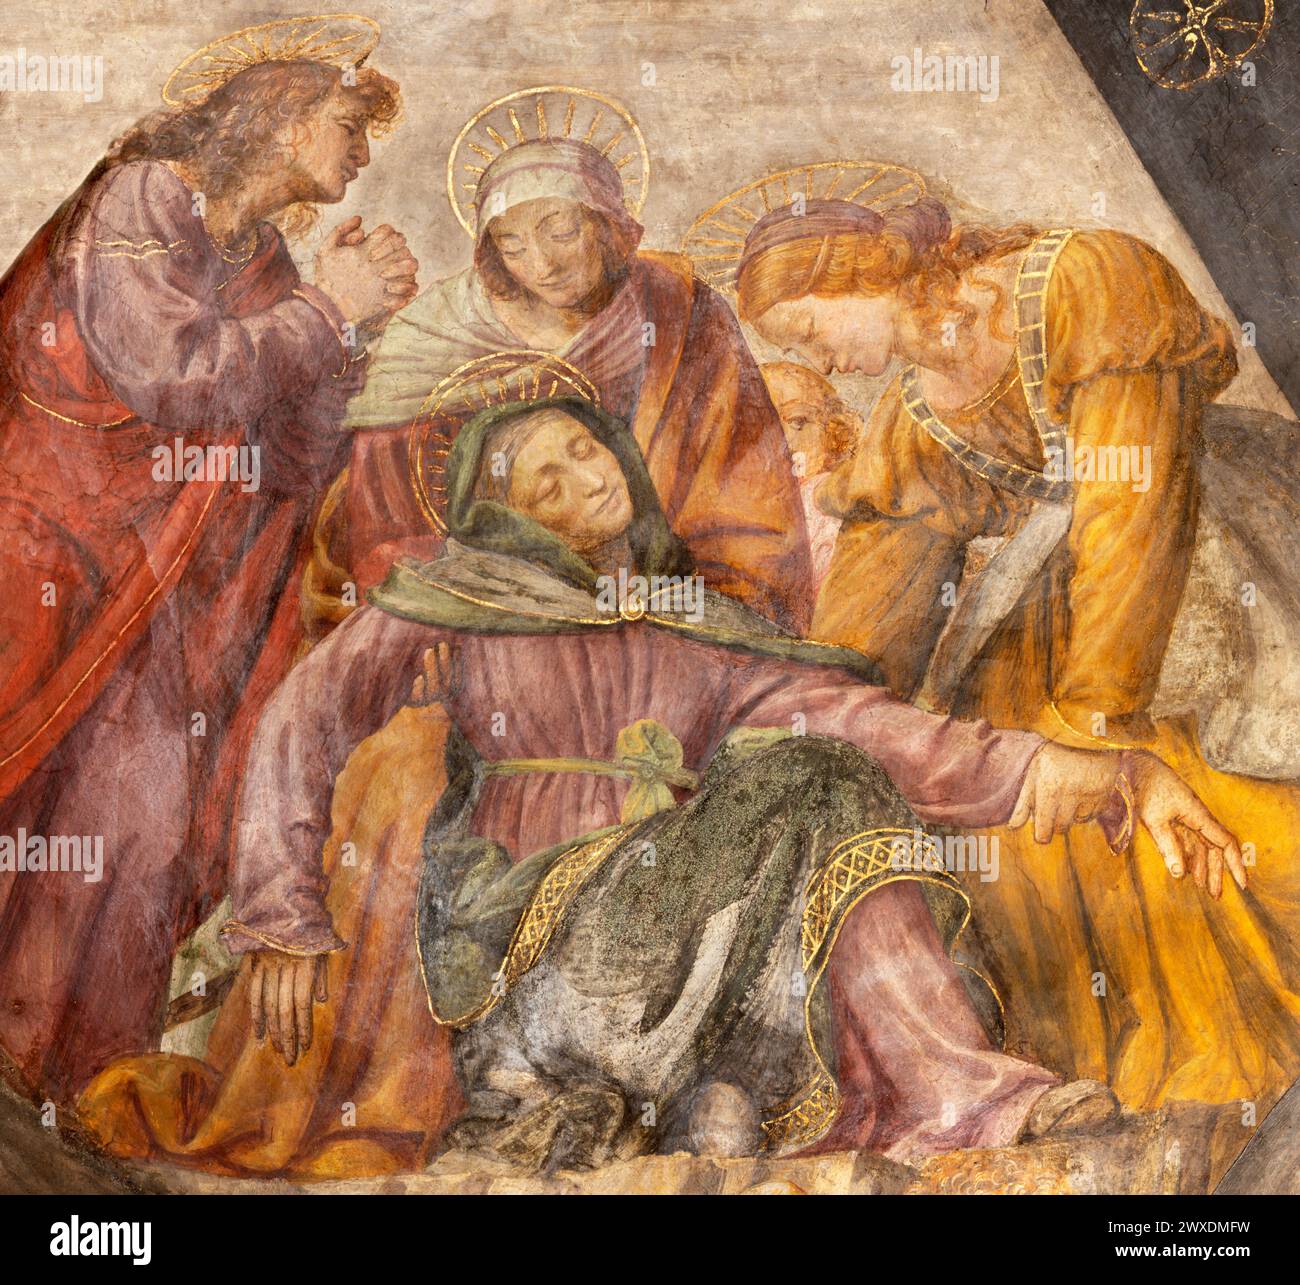 Mailand - das Detail des Renaissance-Freskos der Kreuzigung (Trauer unter dem Kreuz) - Cappella della Passione in San Giorgio im Palazzo. Stockfoto